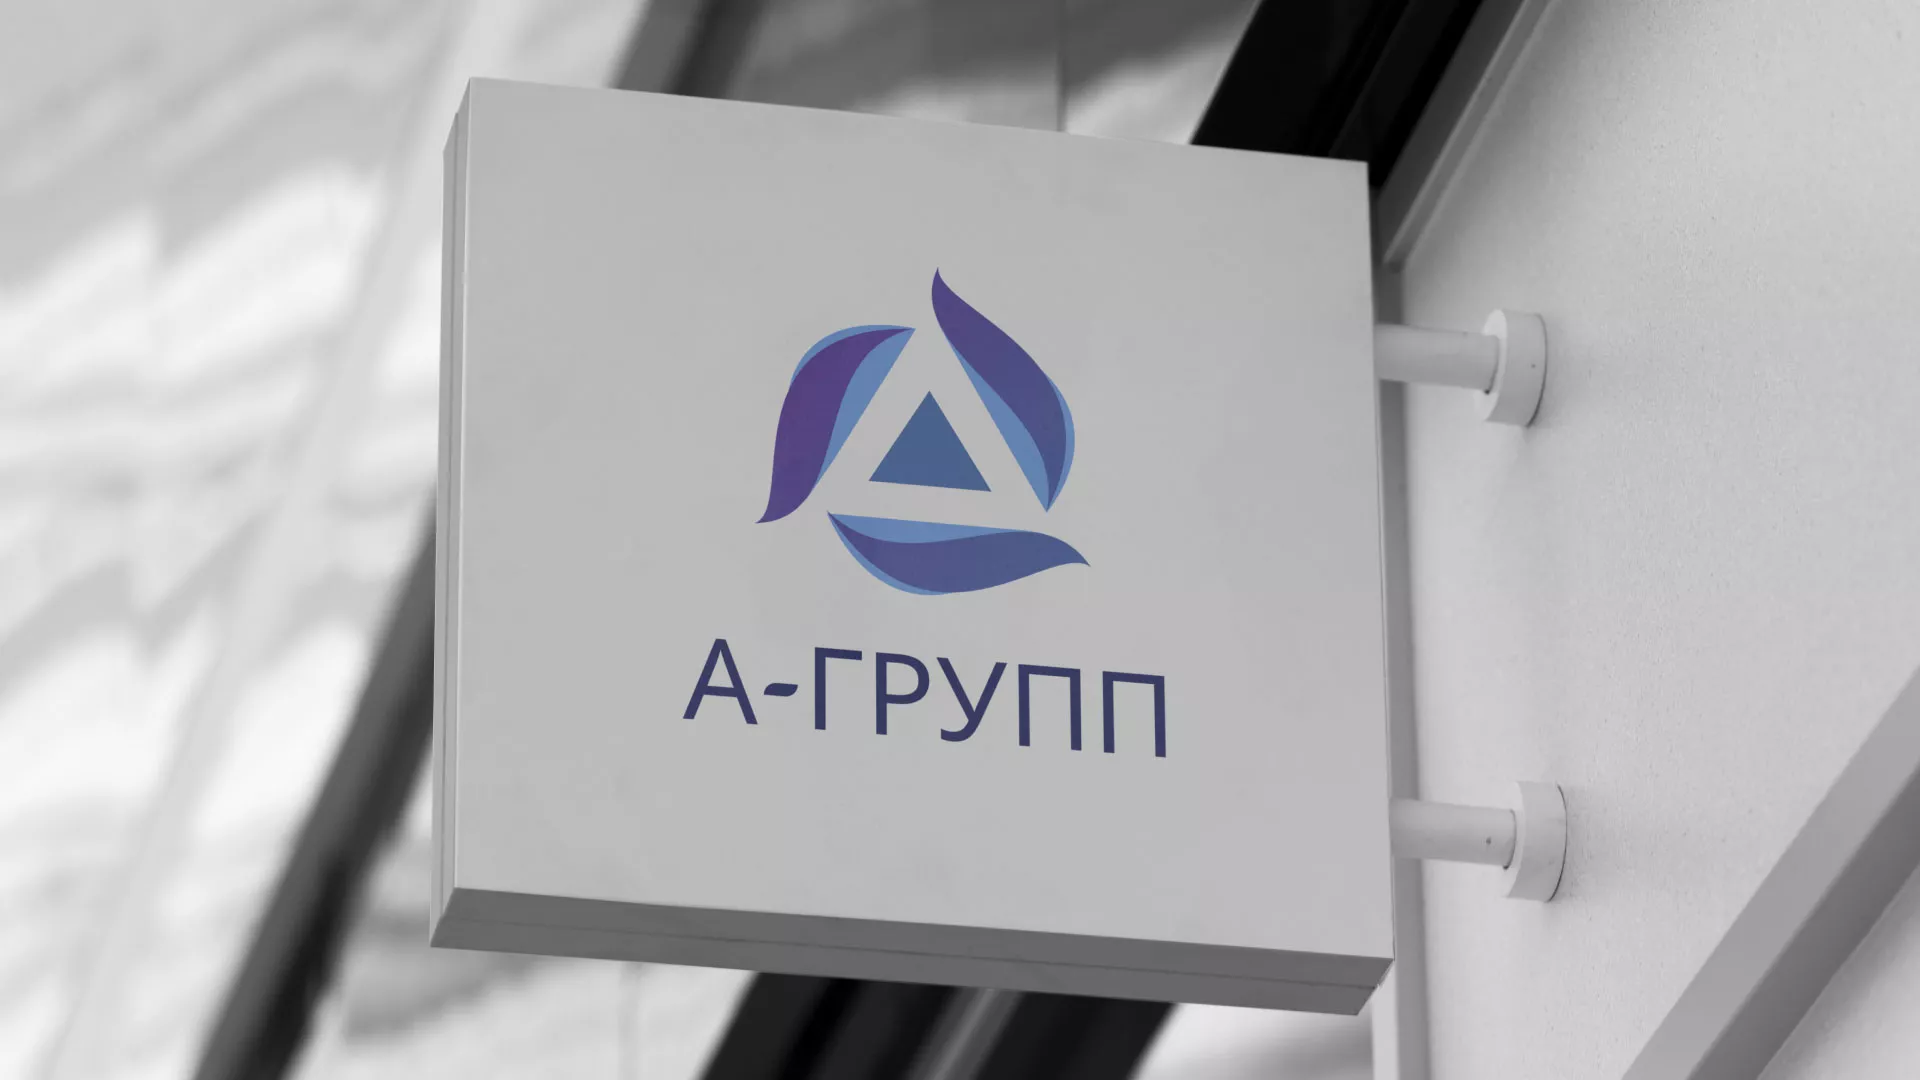 Создание логотипа компании «А-ГРУПП» в Зверево